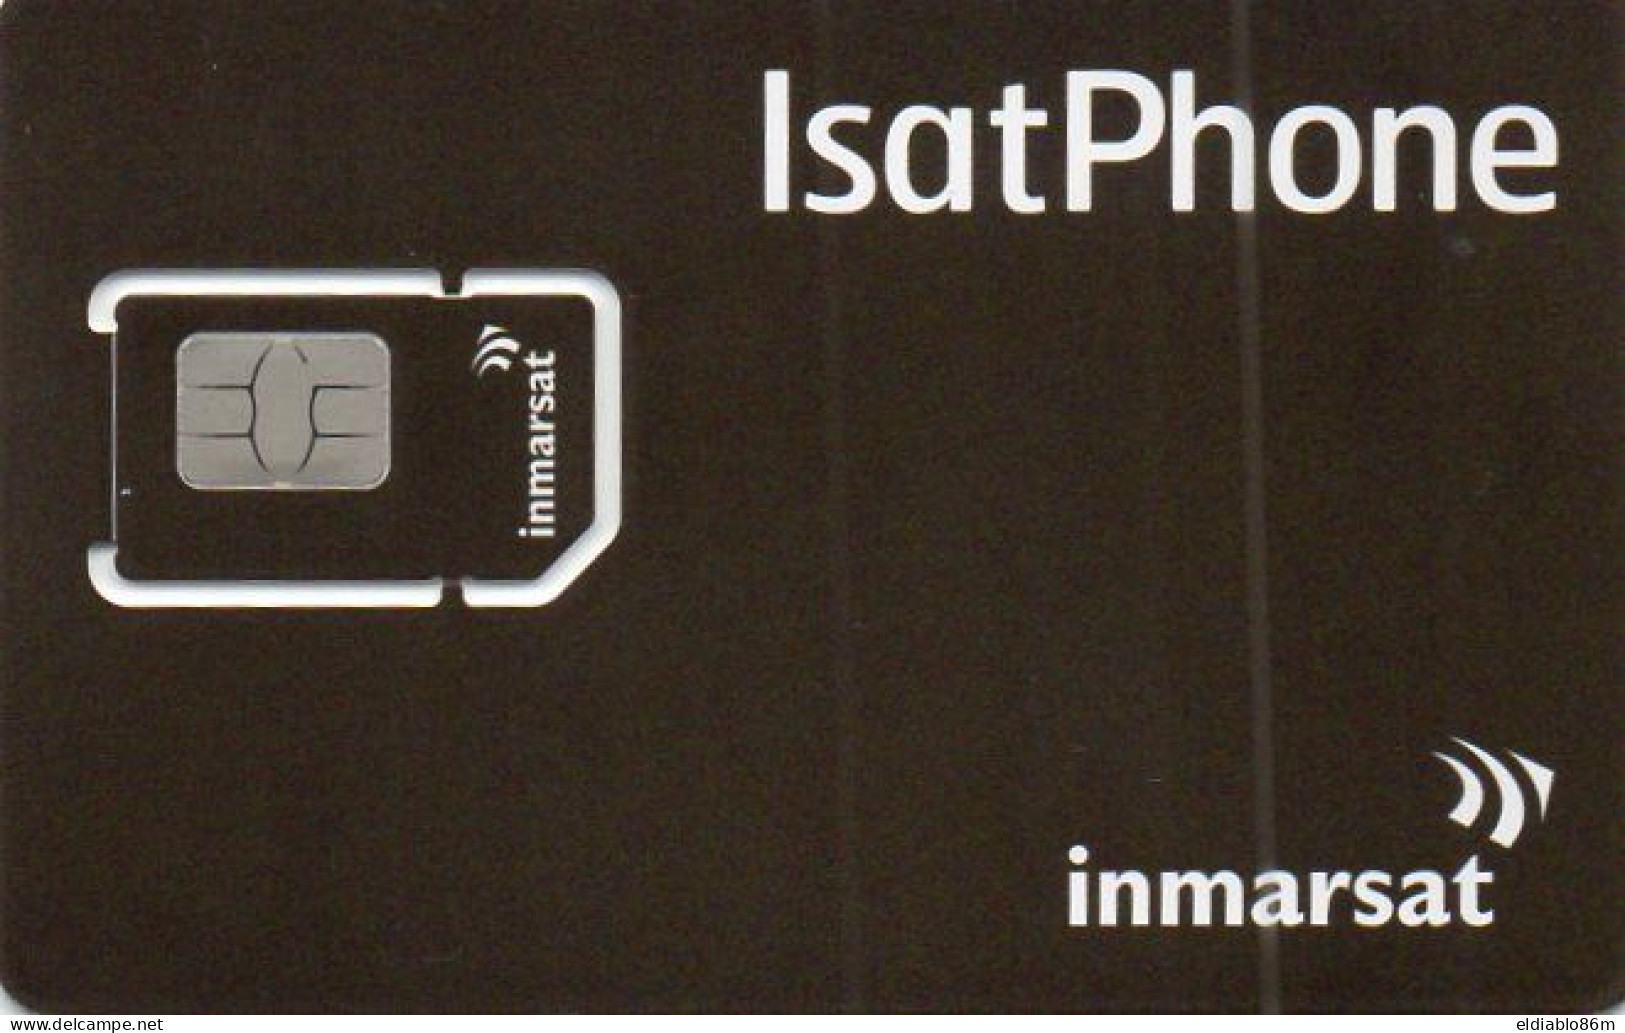 GSM CARD - SATELLITE CARD - INMARSAT - ISATPHONE - MINT - Origine Inconnue